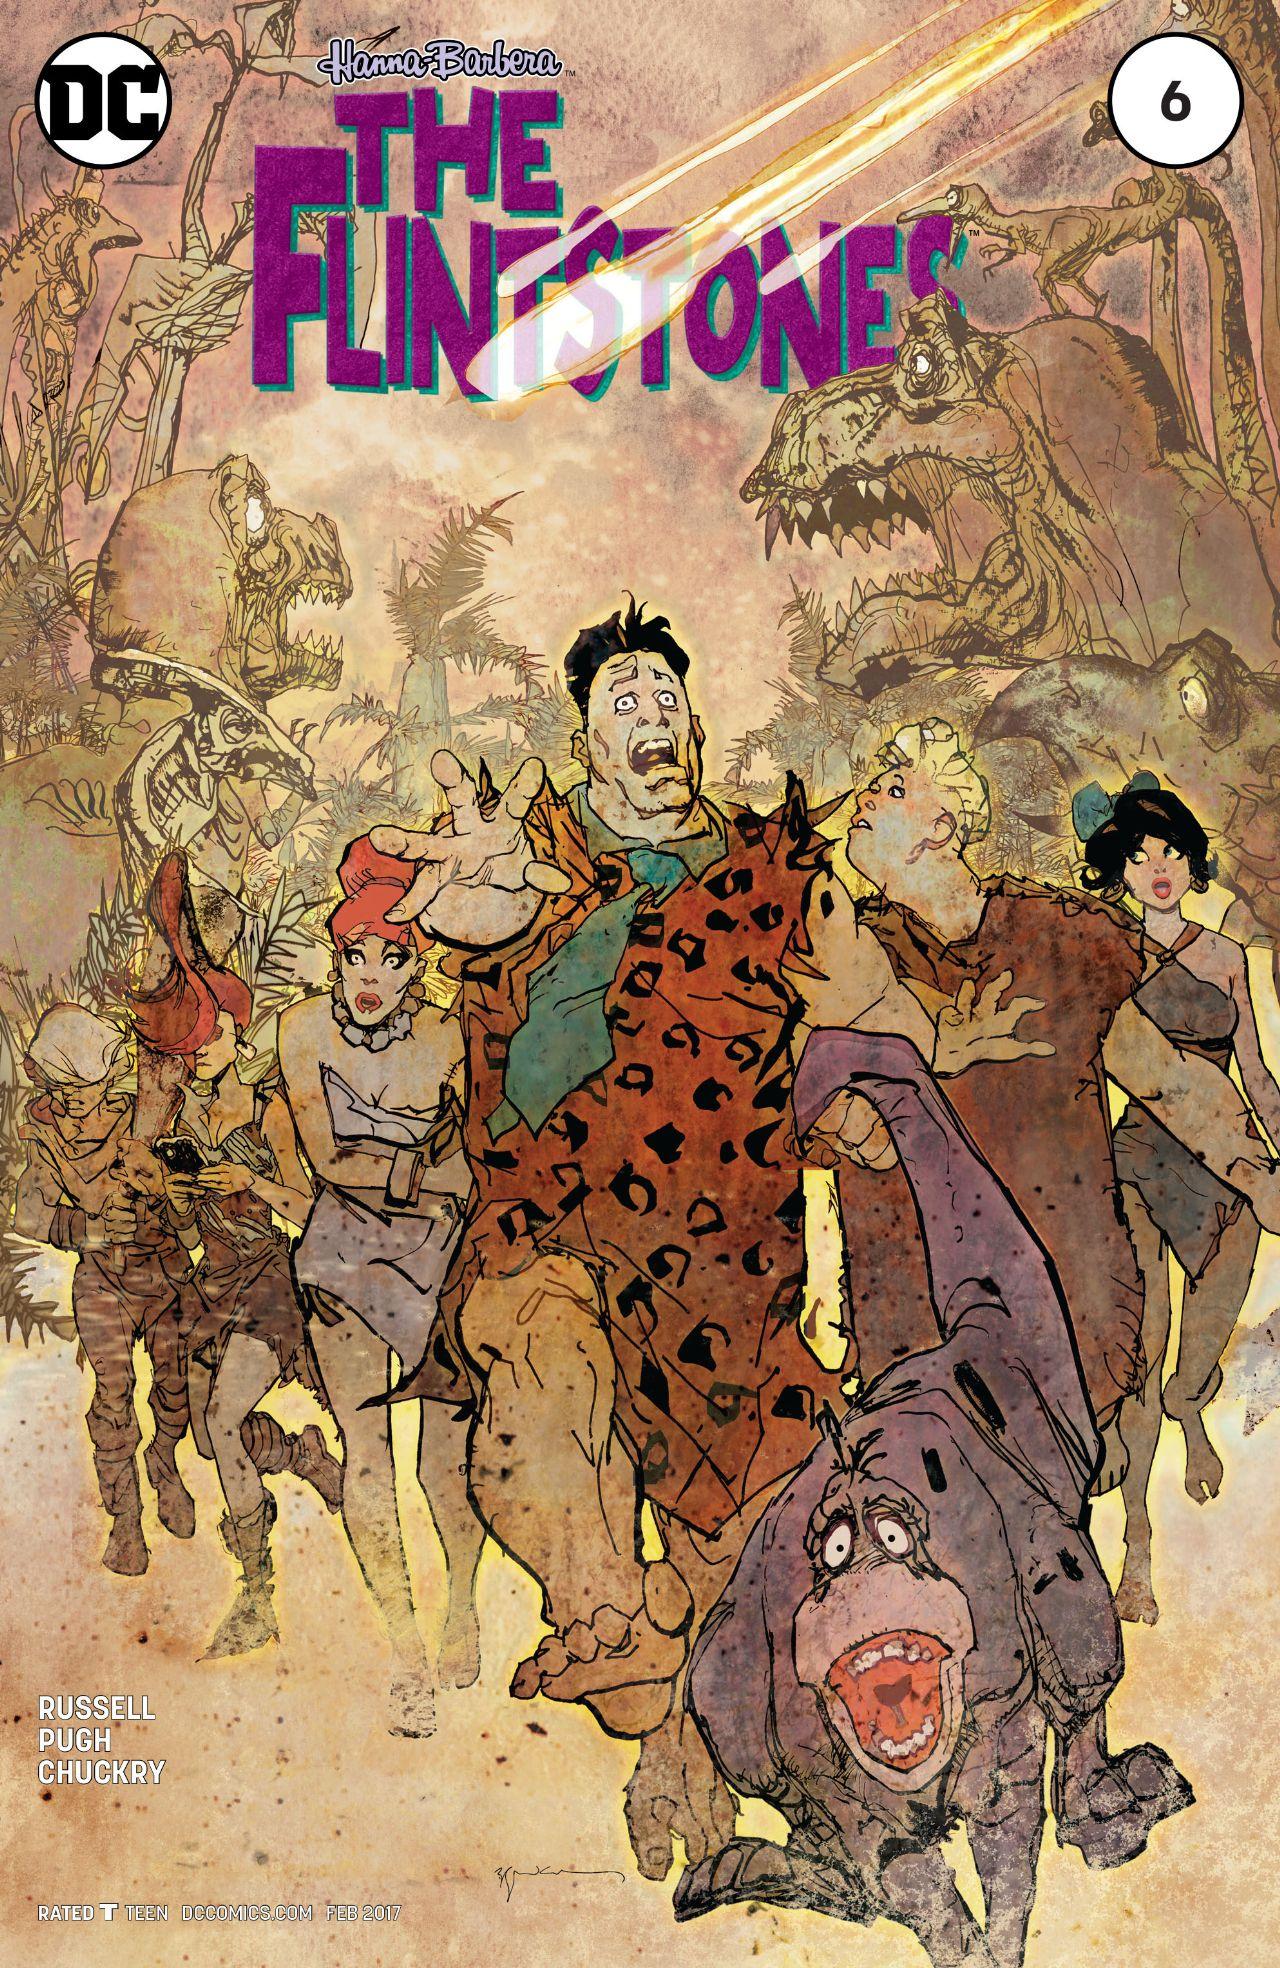 The Flintstones Vol. 1 #6